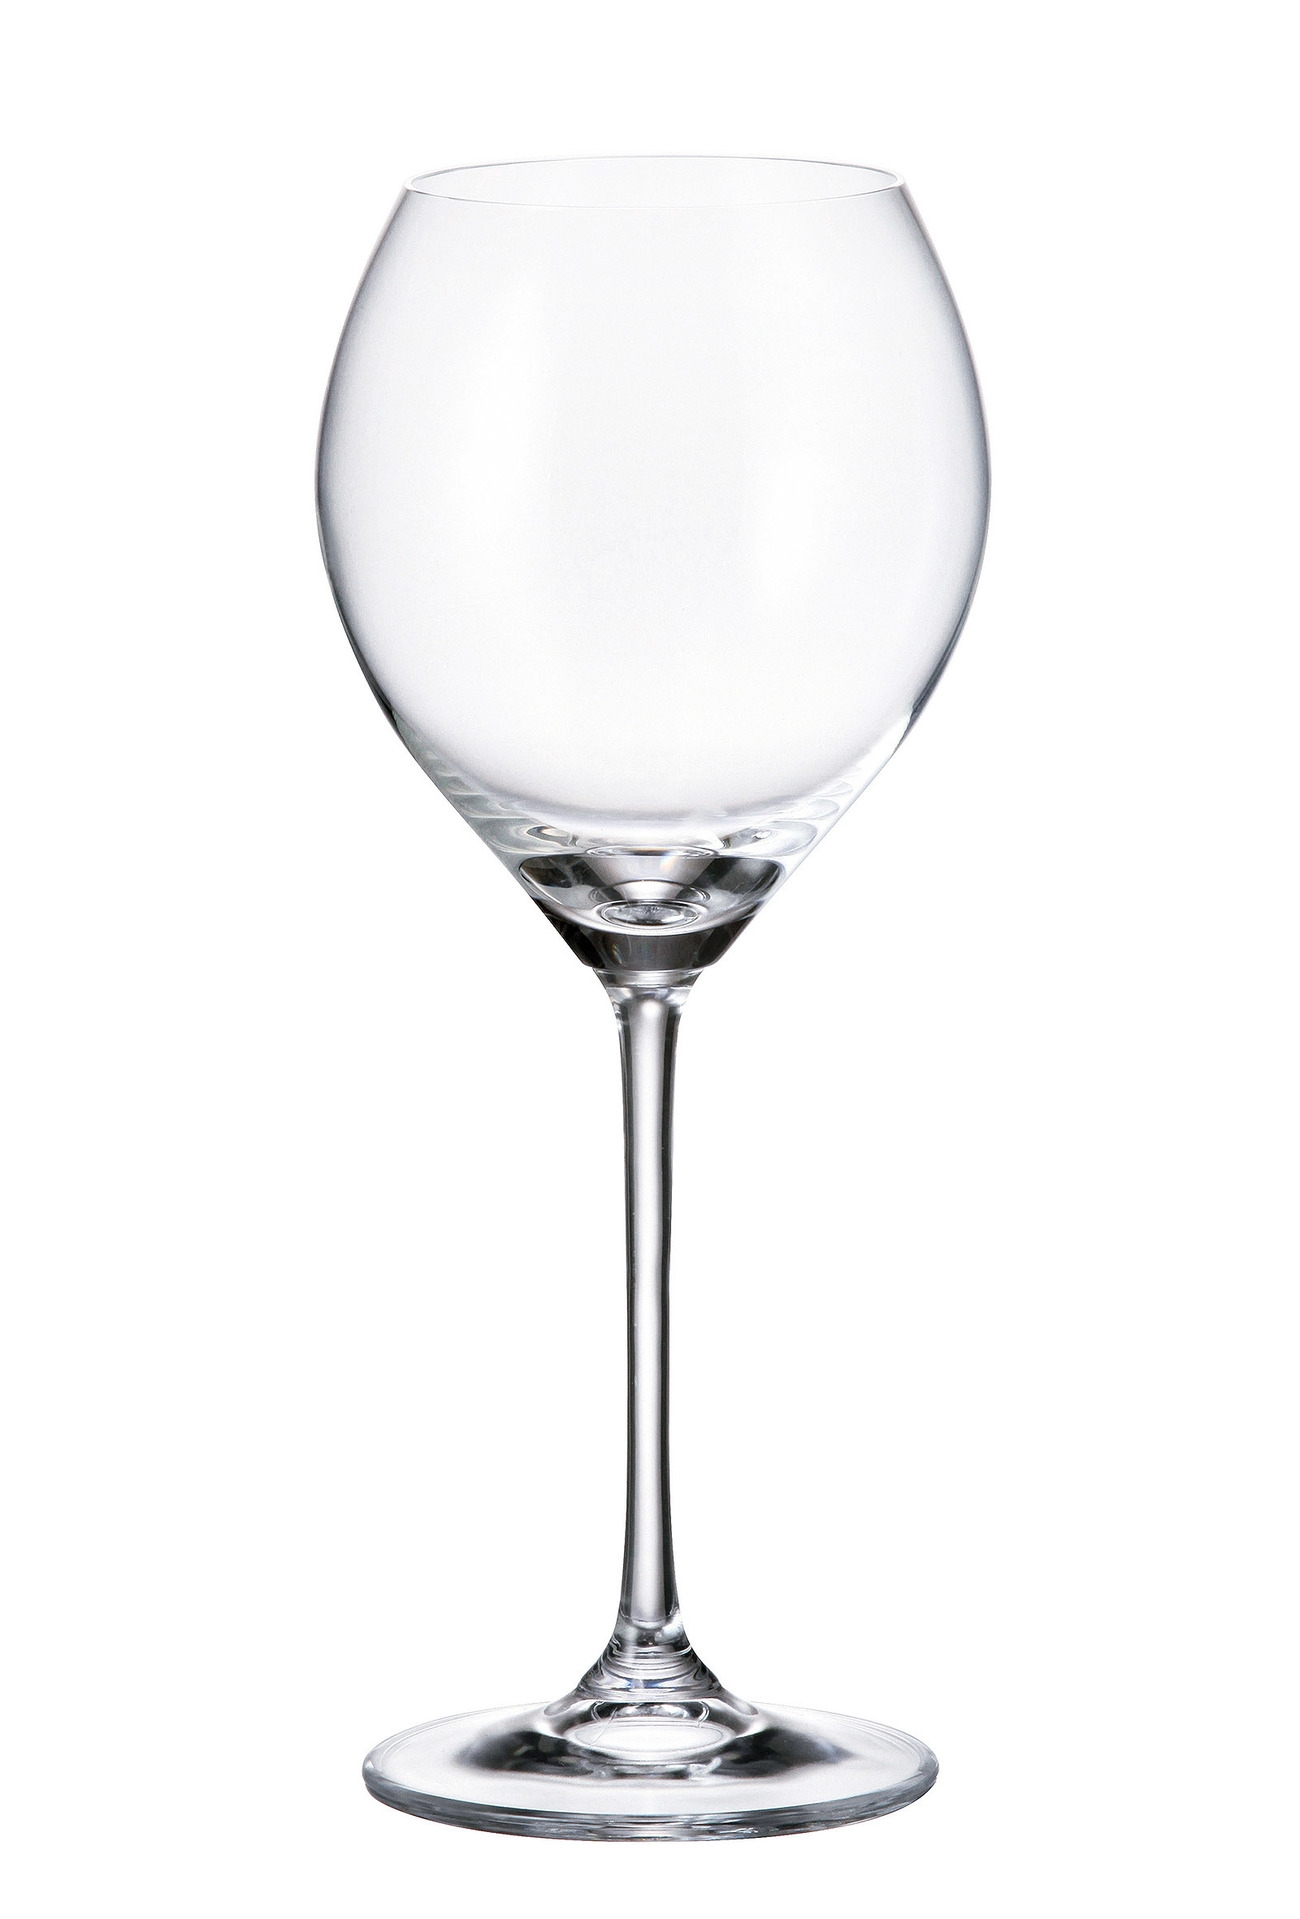 Ποτήρι Κρασιού Κρυστάλλινο Bohemia Carduelis 390ml CTB01F06390 (Σετ 6 Τεμάχια) (Υλικό: Κρύσταλλο, Χρώμα: Διάφανο , Μέγεθος: Κολωνάτο) - Κρύσταλλα Βοημίας - CTB01F06390